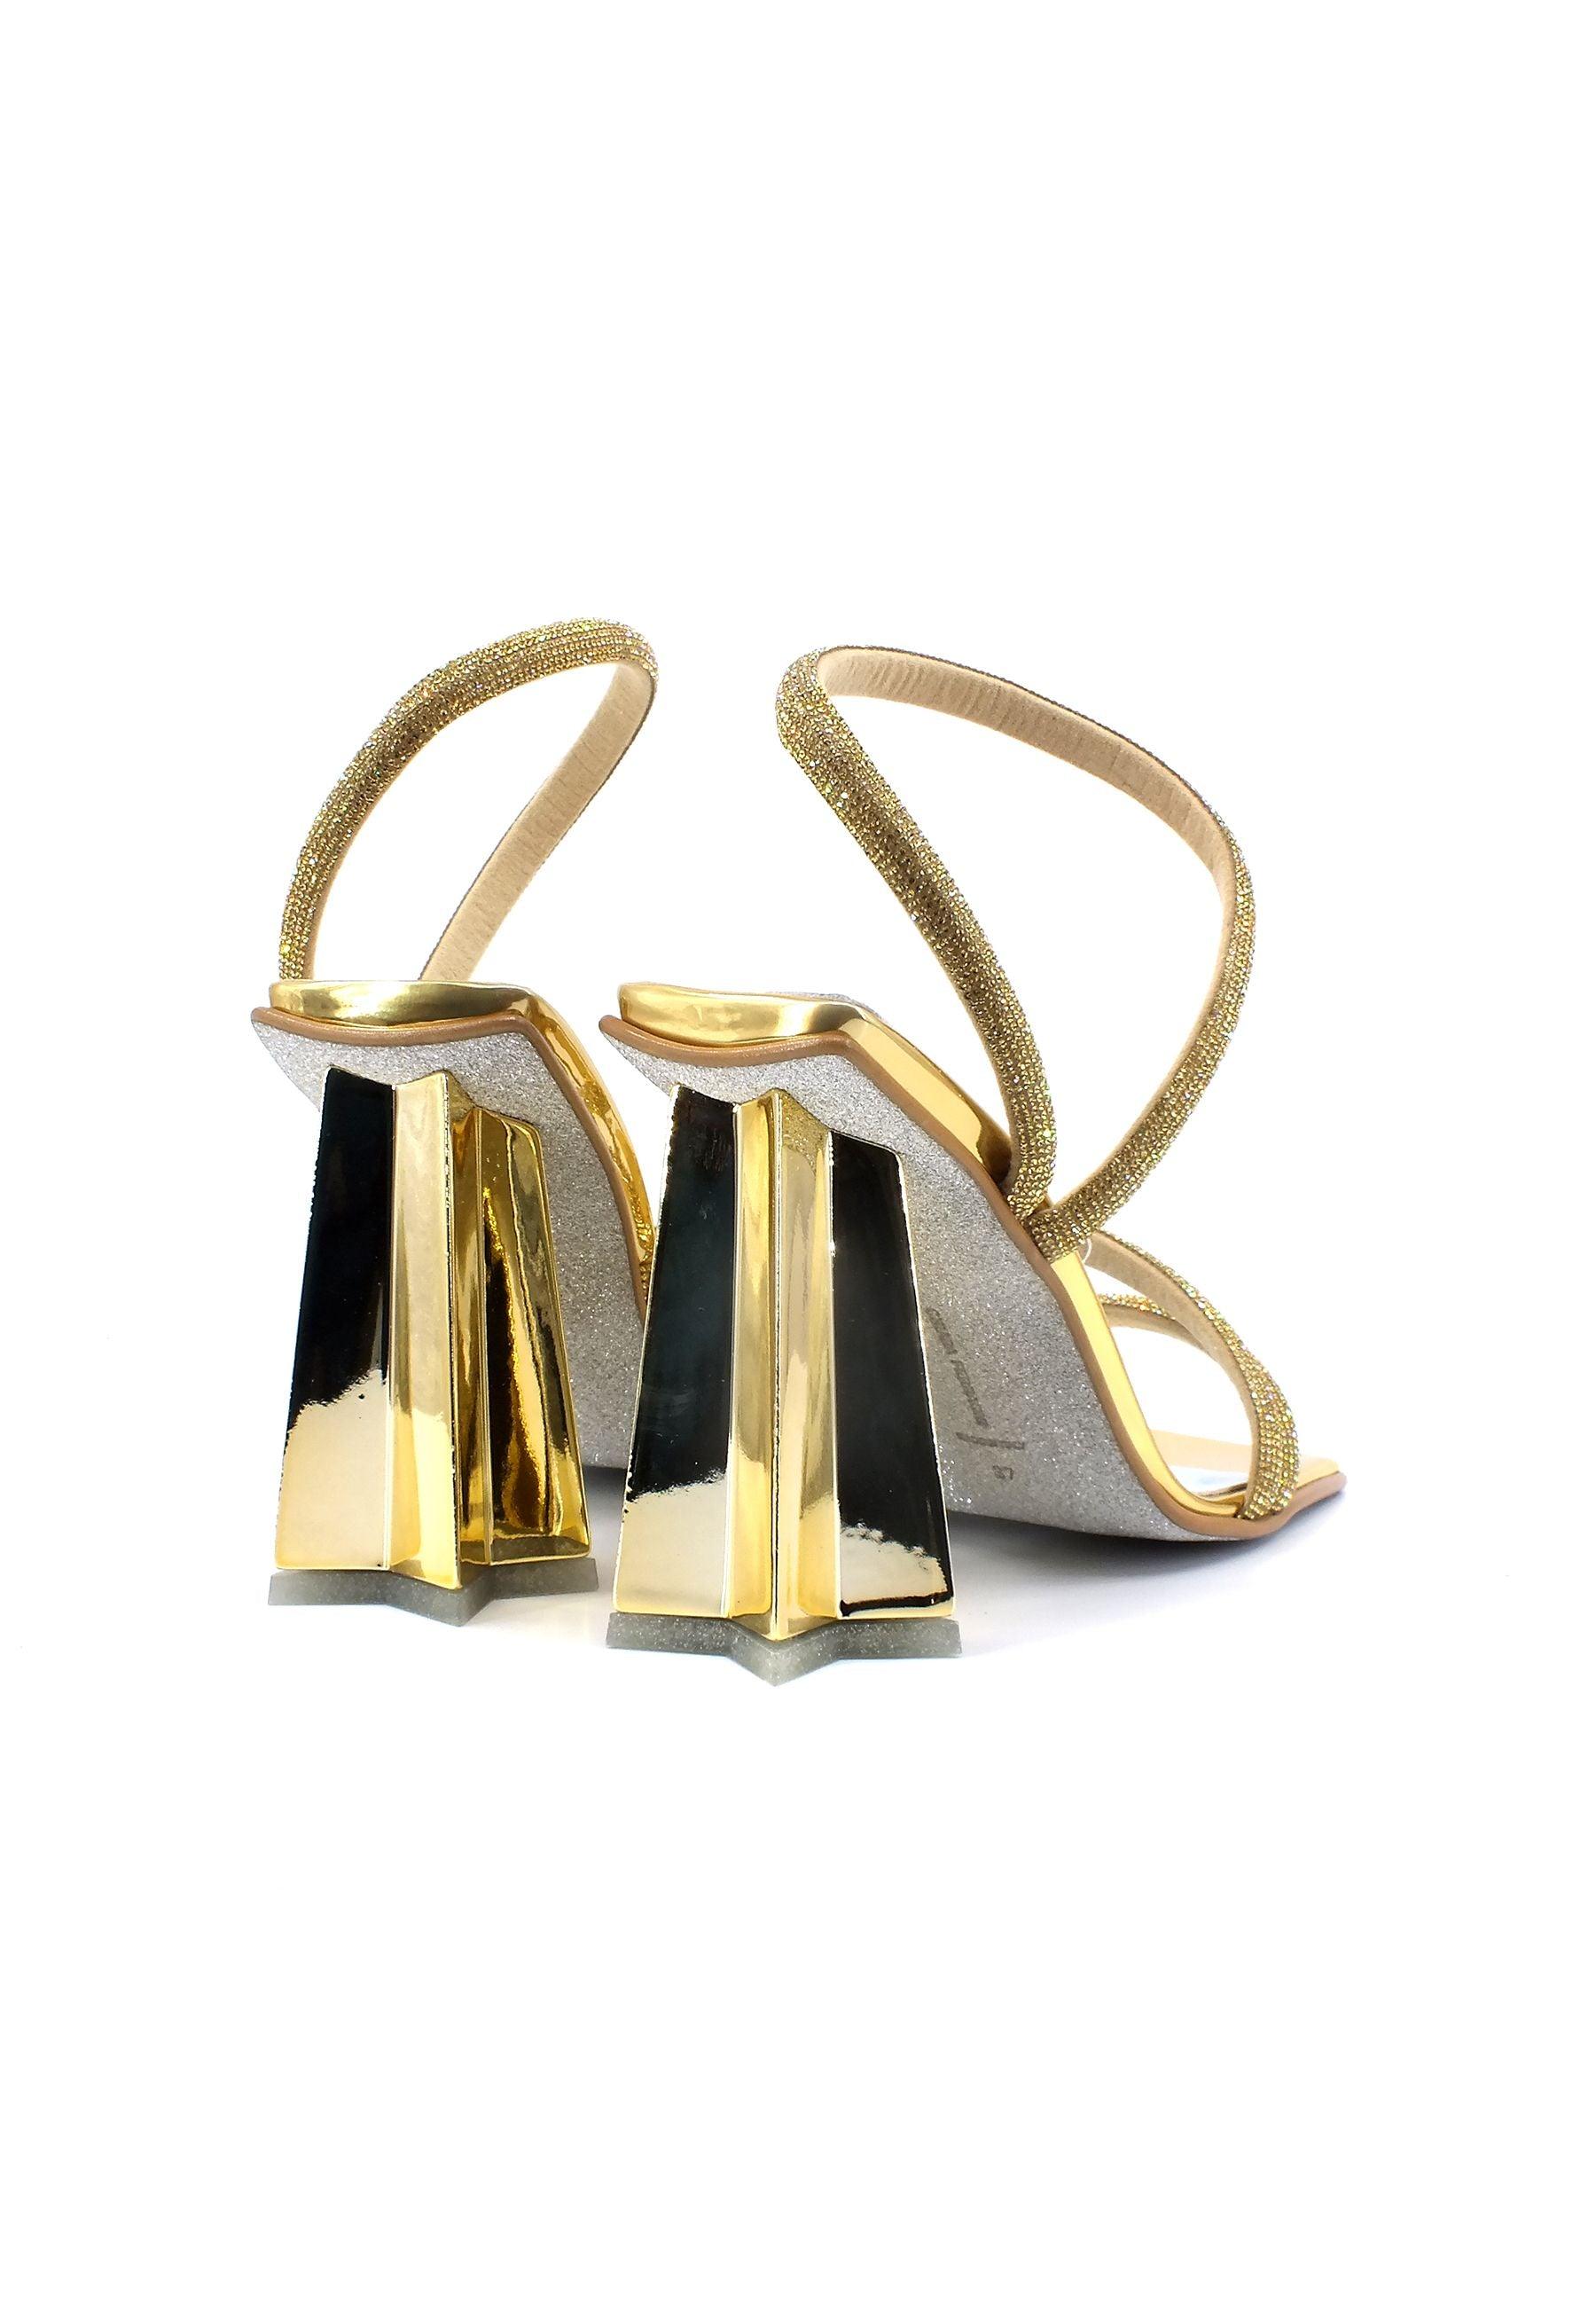 CHIARA FERRAGNI Sandalo Strass Donna Gold CF3136-005 - Sandrini Calzature e Abbigliamento